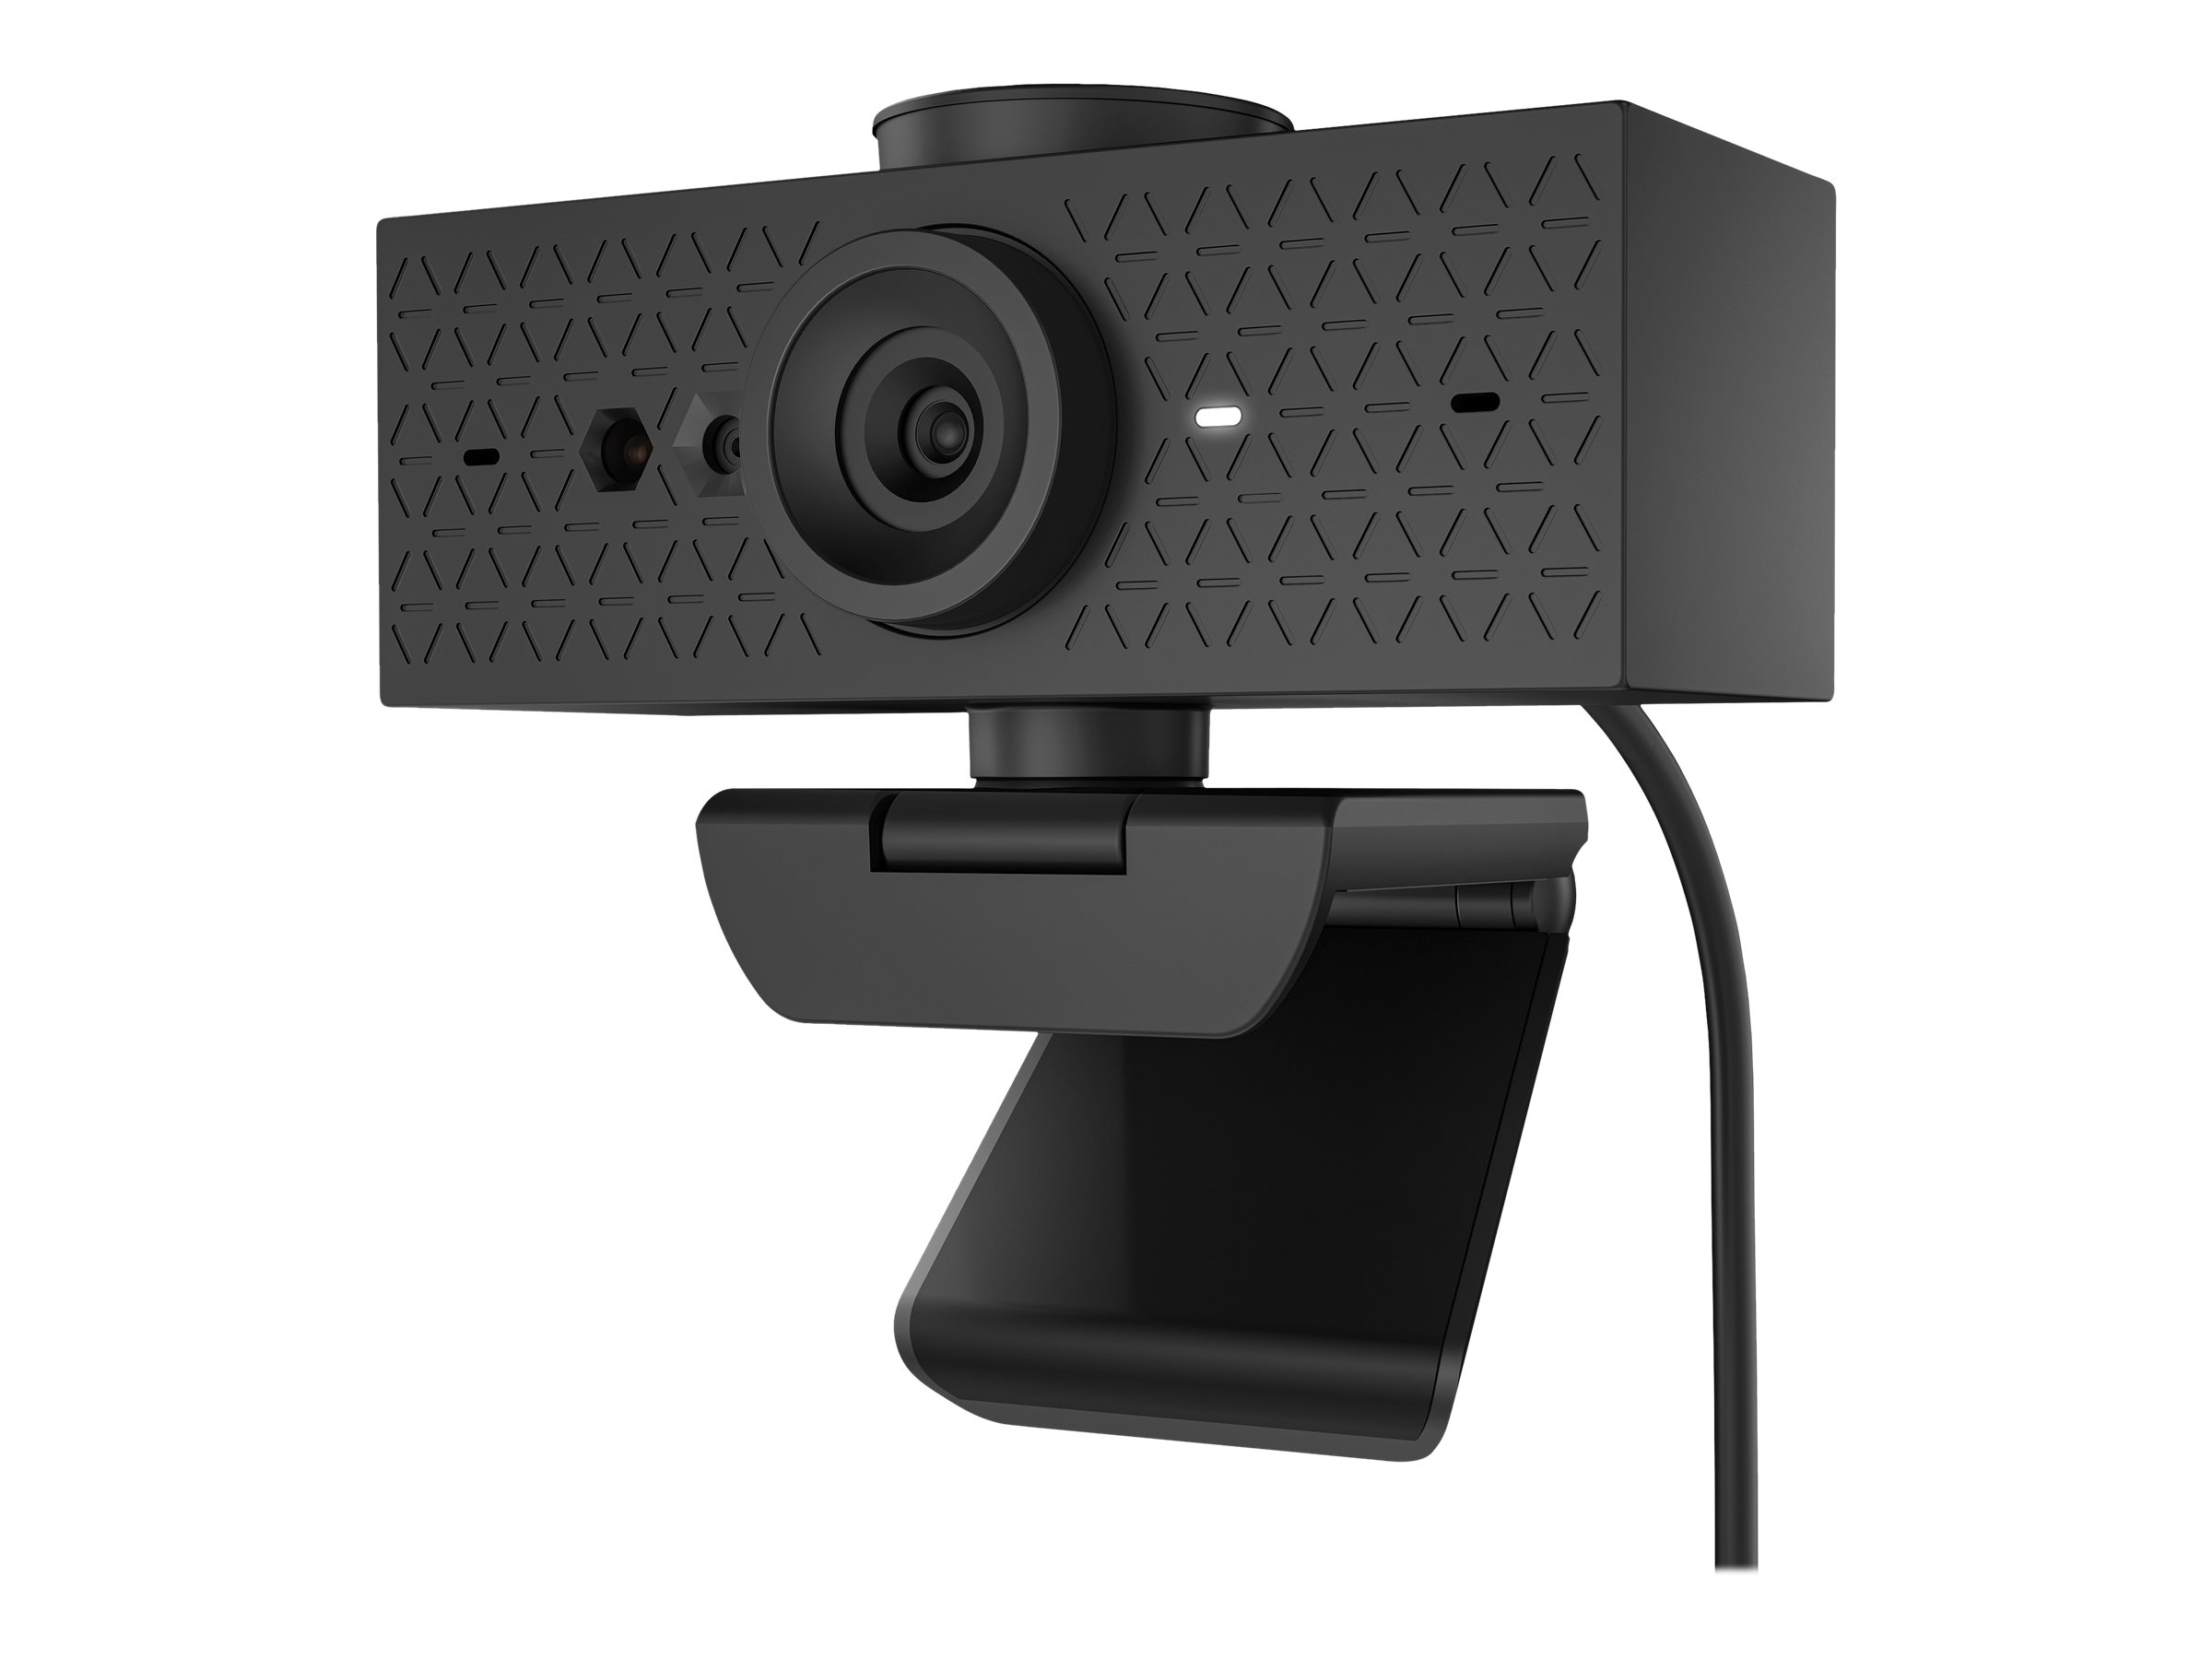 HP 625 - Webcam - neigen - Farbe - 4 MP - 1920 x 1080